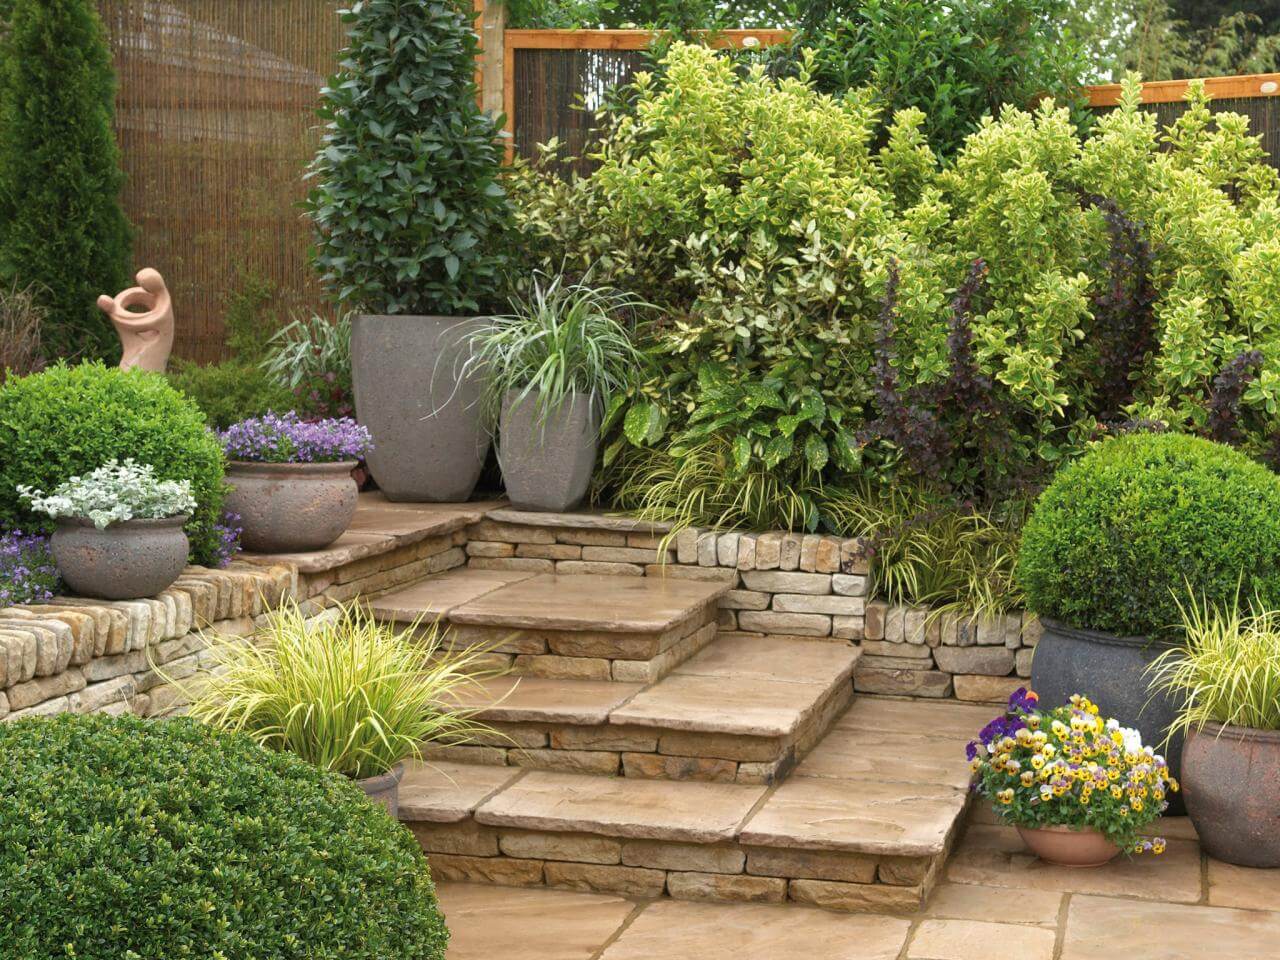  garden home design